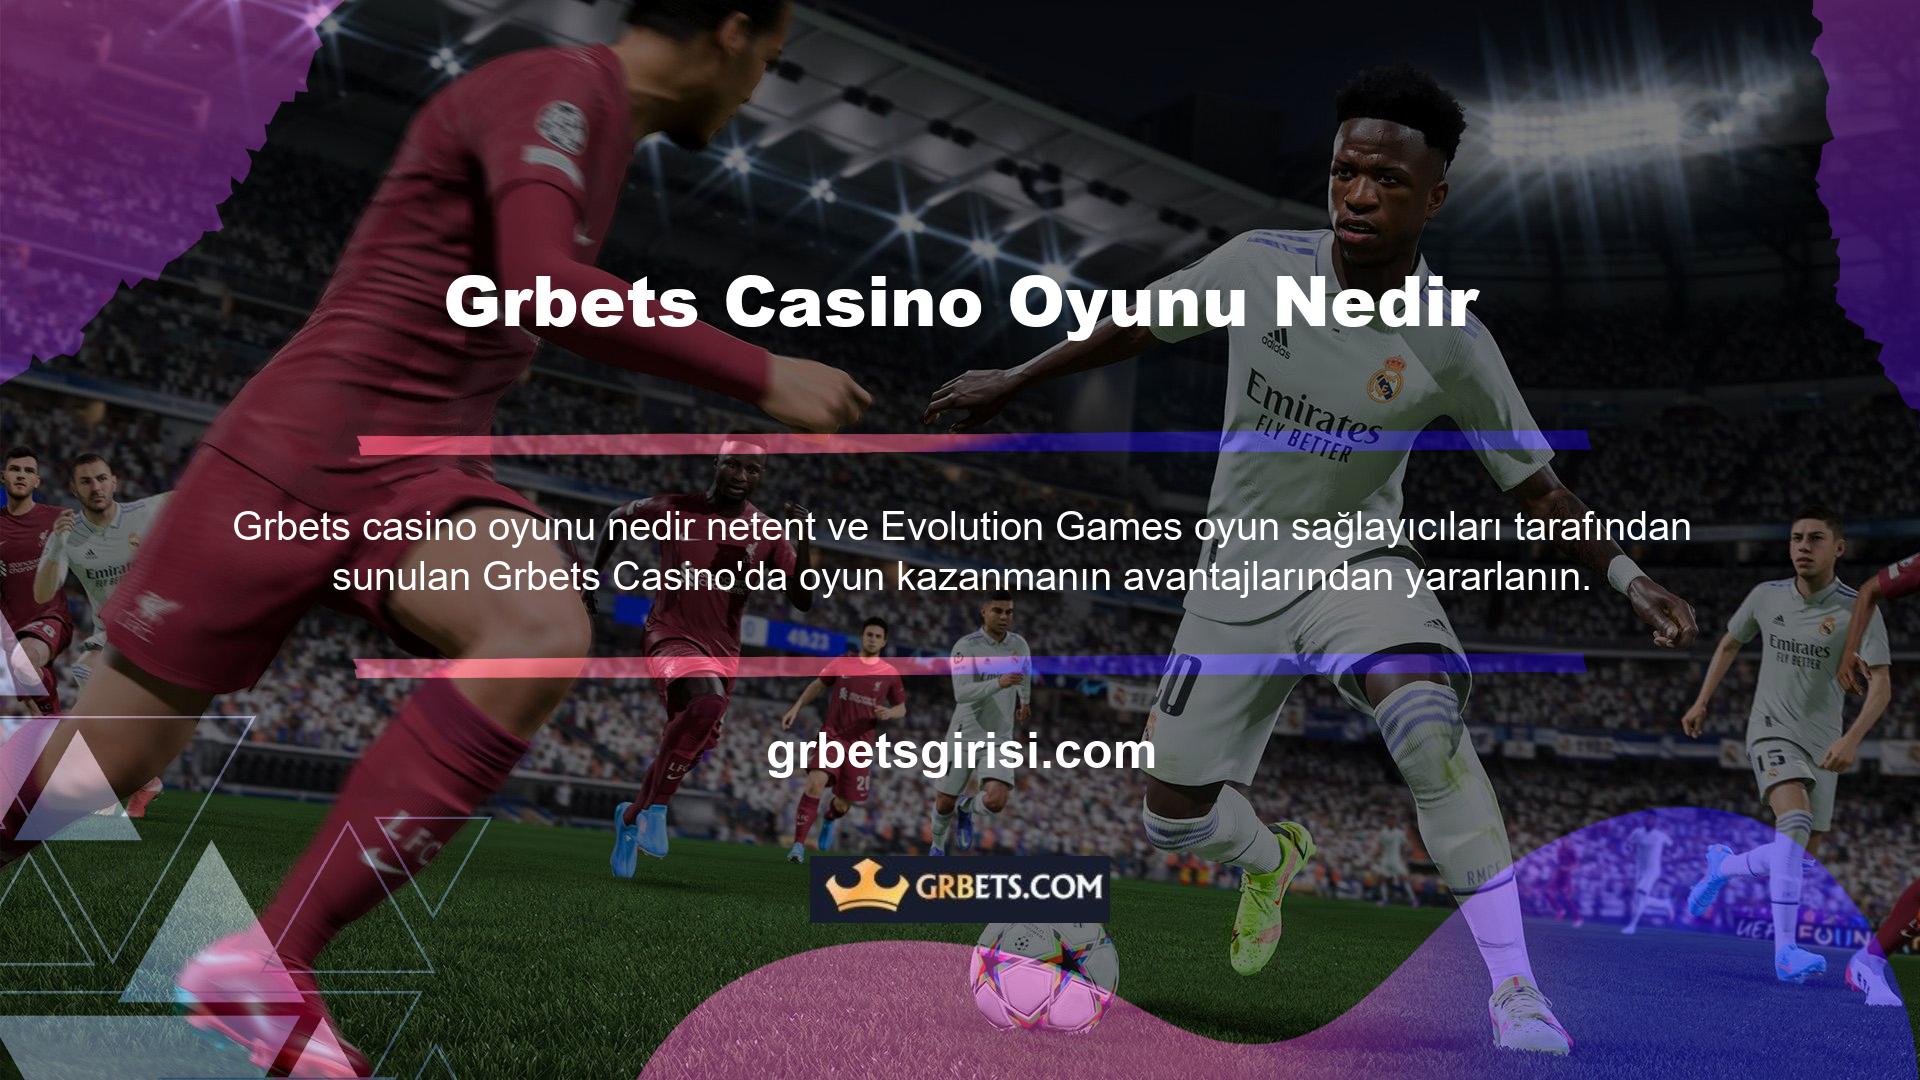 Spor bahisleri gibi kaliteli eğlence etkinlikleri sitede yayınlanmakta ve insanlar Türkçe dil desteği ile casino oyunlarını rahatlıkla oynayabilmektedir